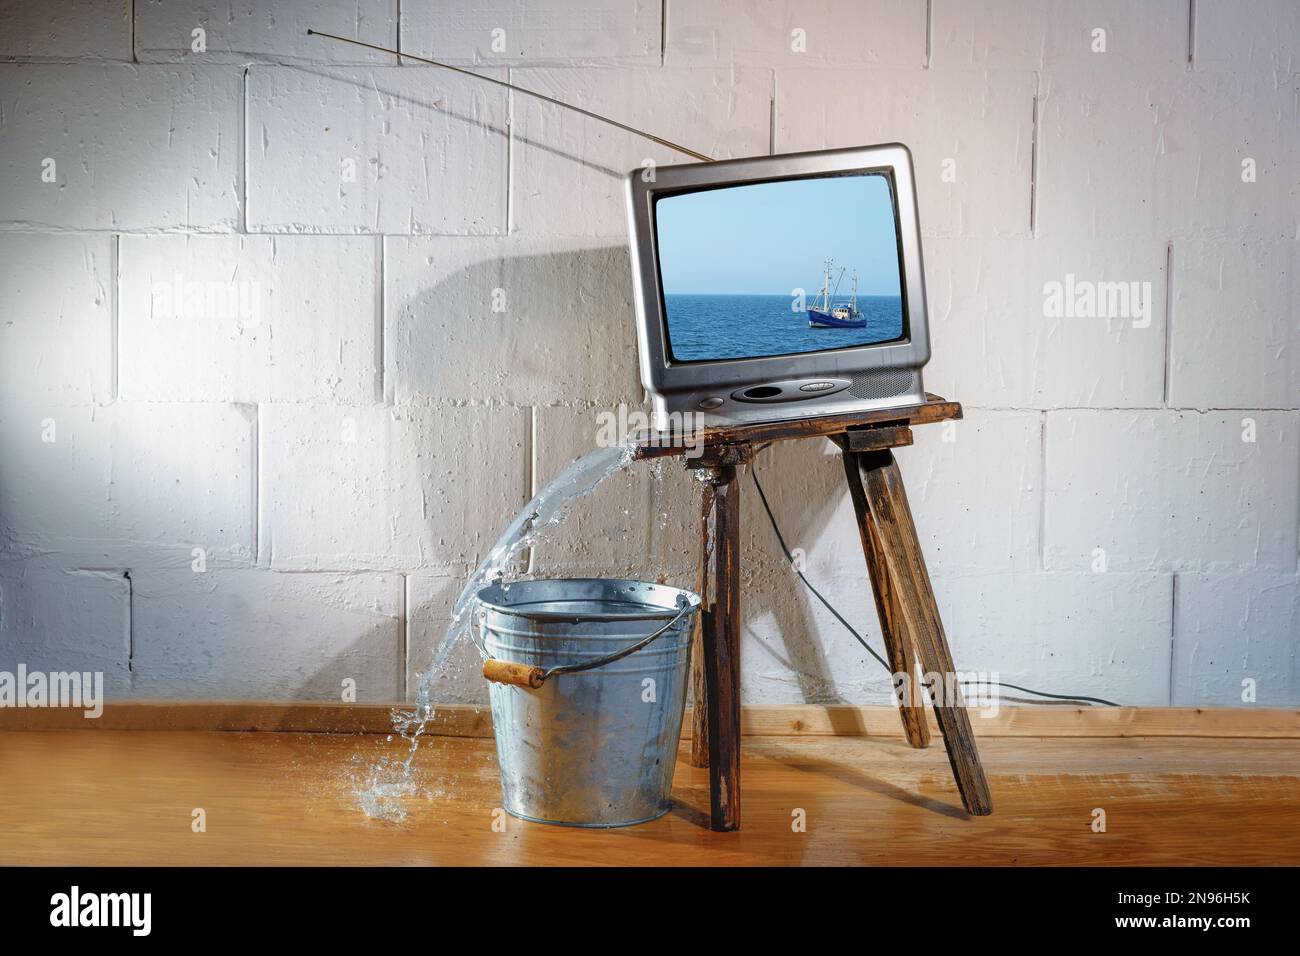 Un vieux téléviseur d'époque sur un tabouret en bois incliné montre un film d'un bateau sur la mer, mais l'eau s'écoule sur le sol sans le seau en dessous. OB Banque D'Images